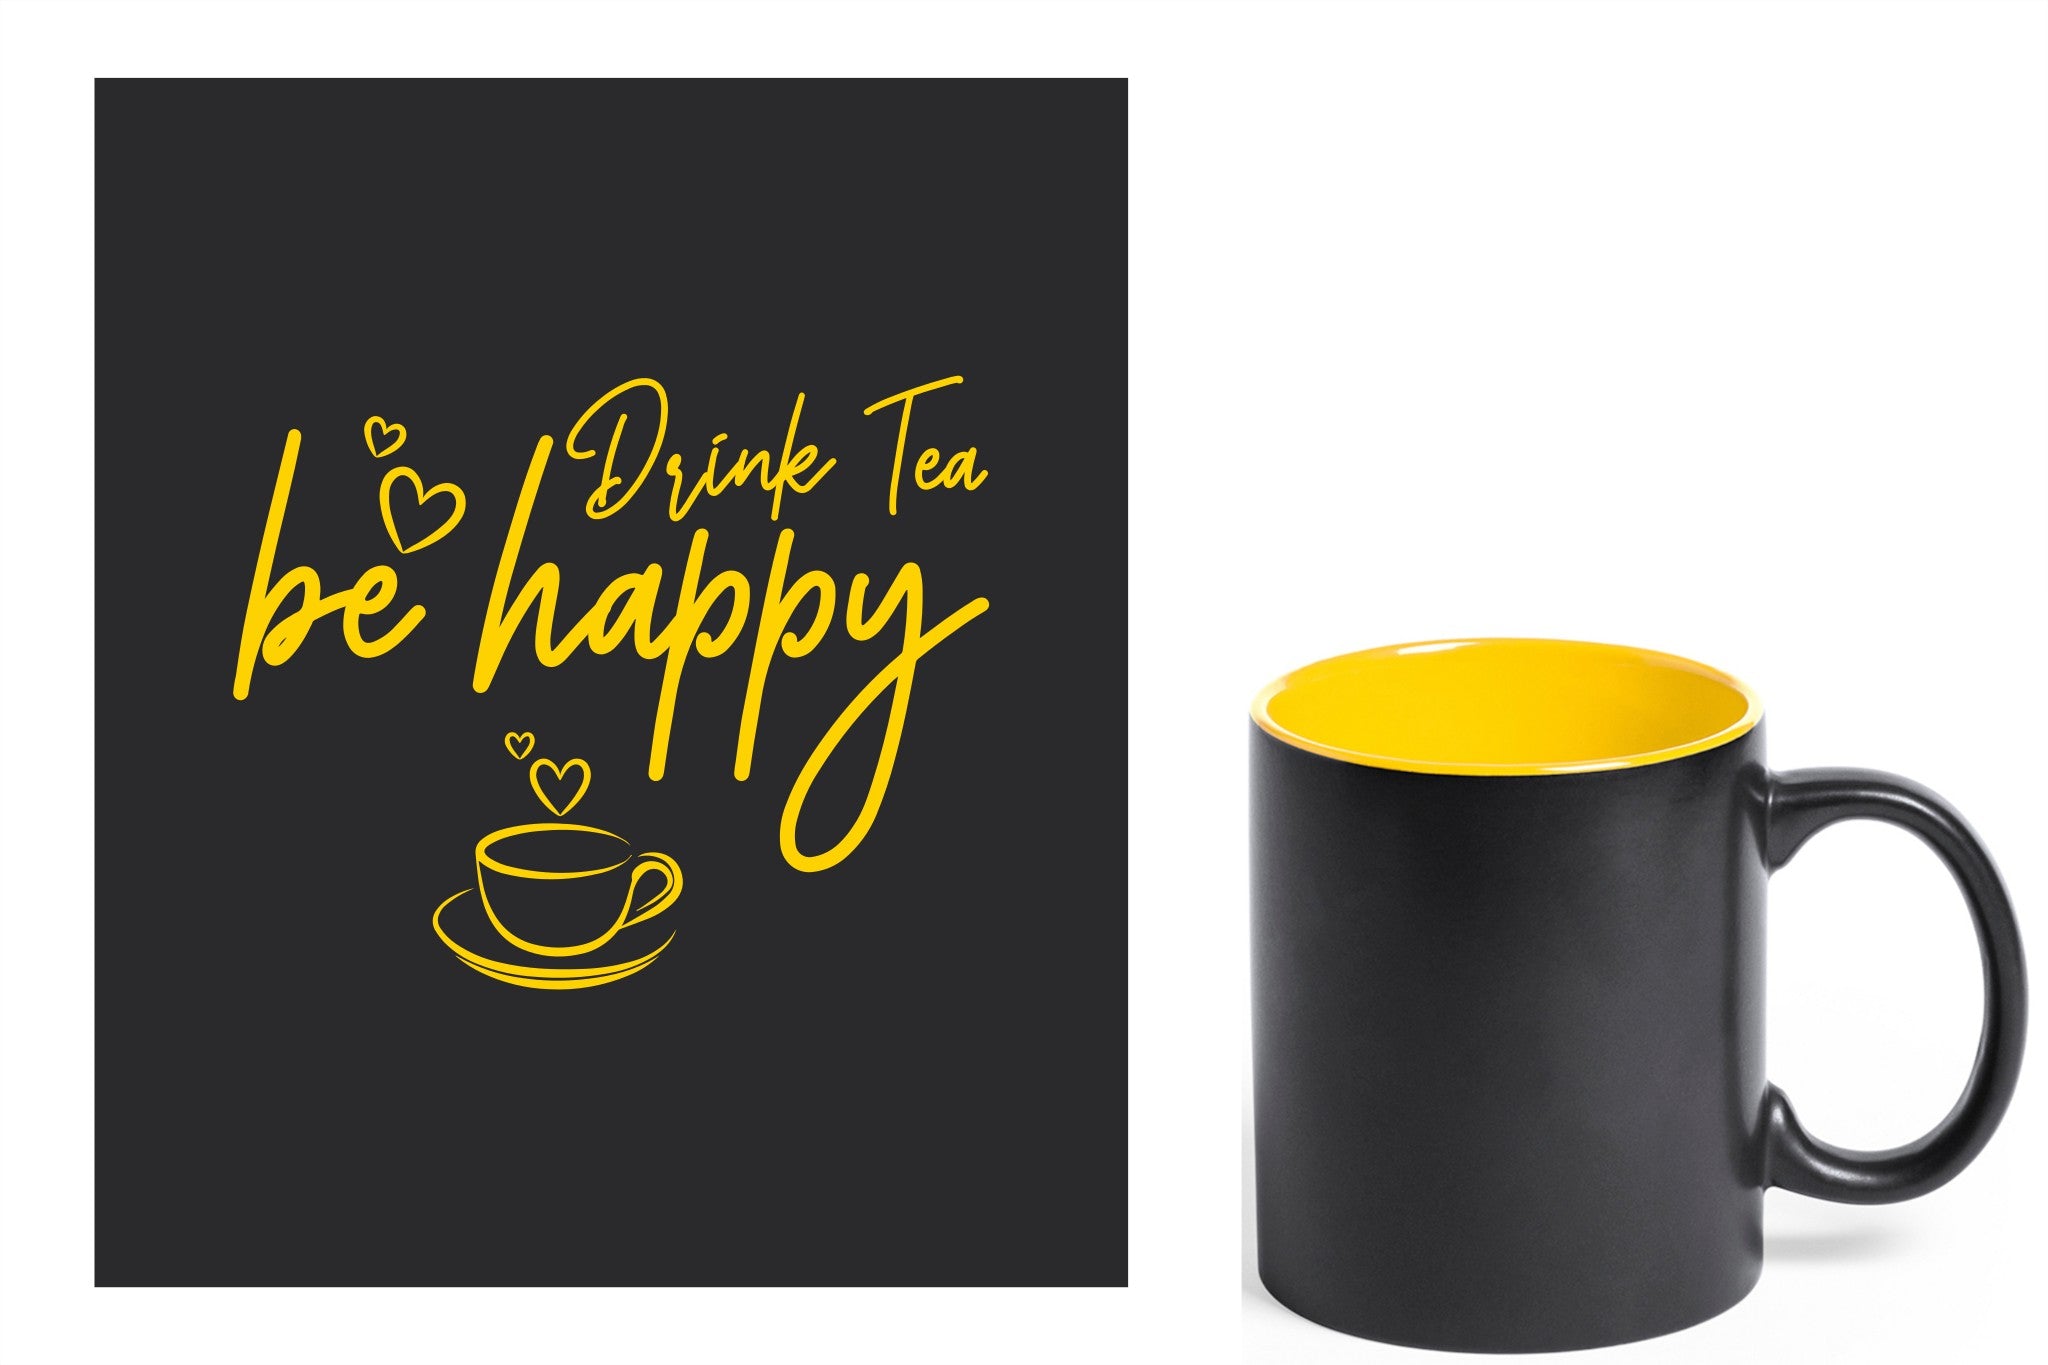 zwarte keramische mok met gele gravure  'Be happy drink tea'.